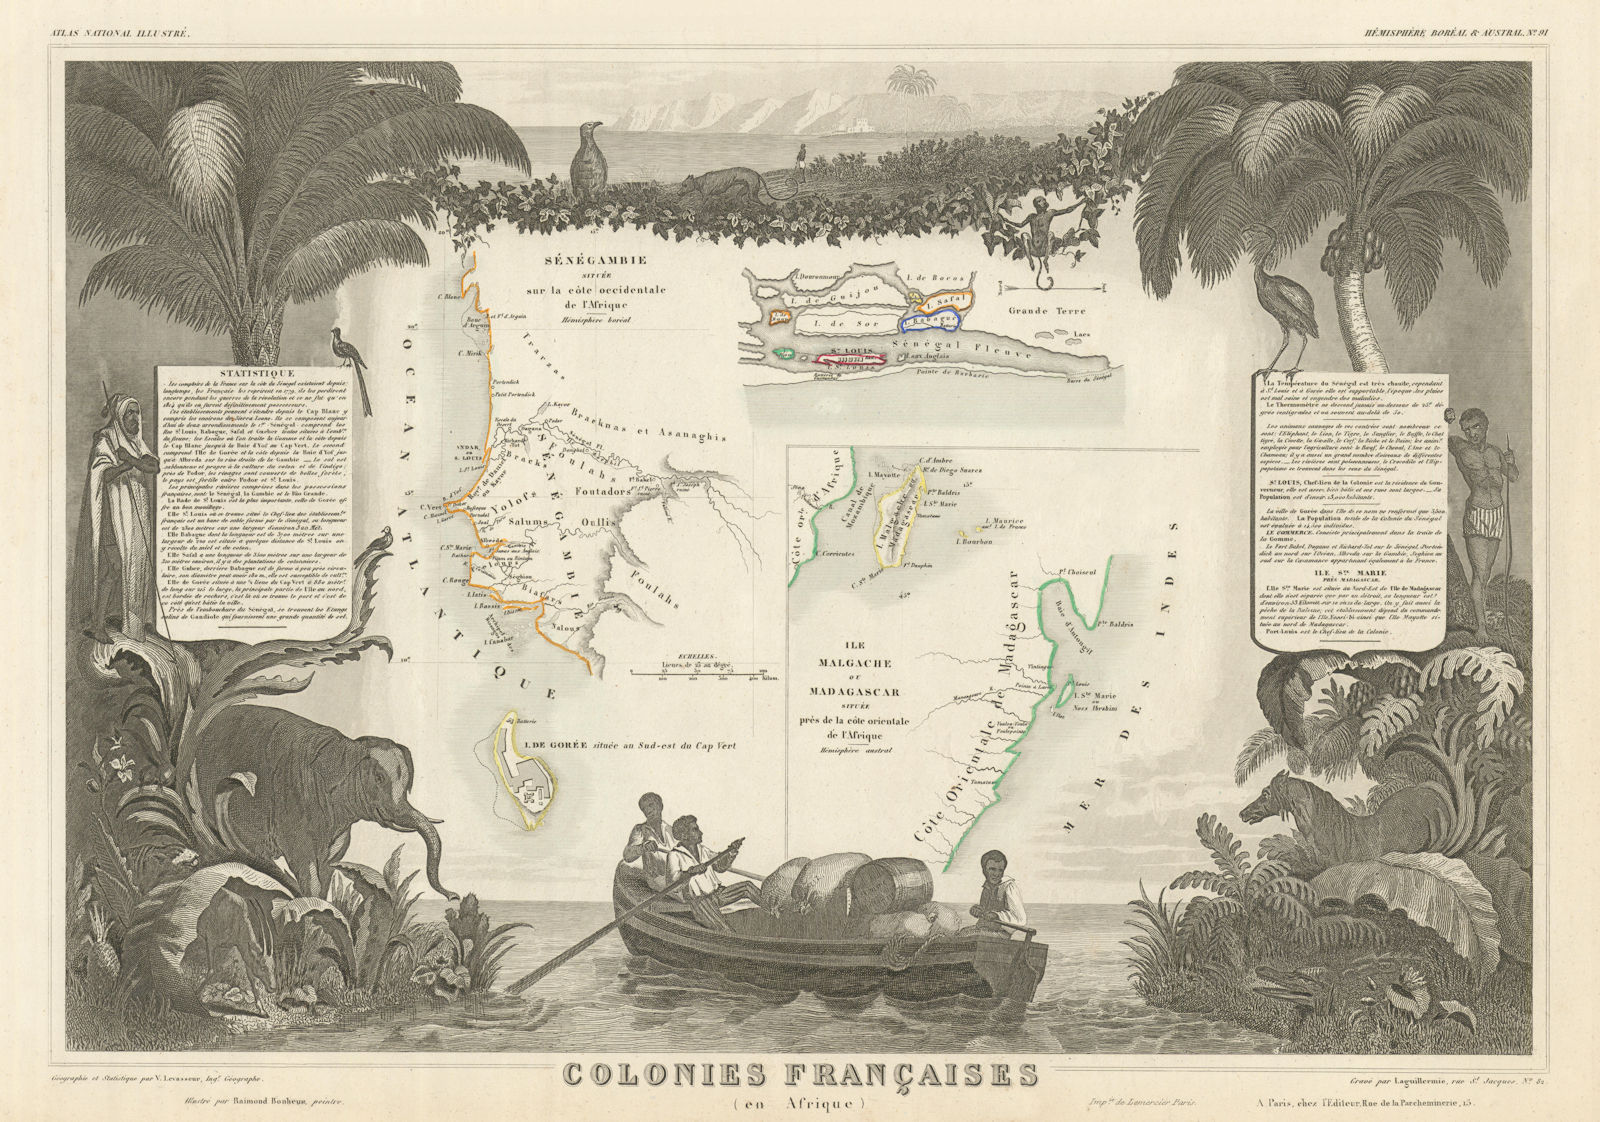 COLONIES FRANÇAISES AFRIQUE. Africa Sénégambie Madagascar. LEVASSEUR 1856 map